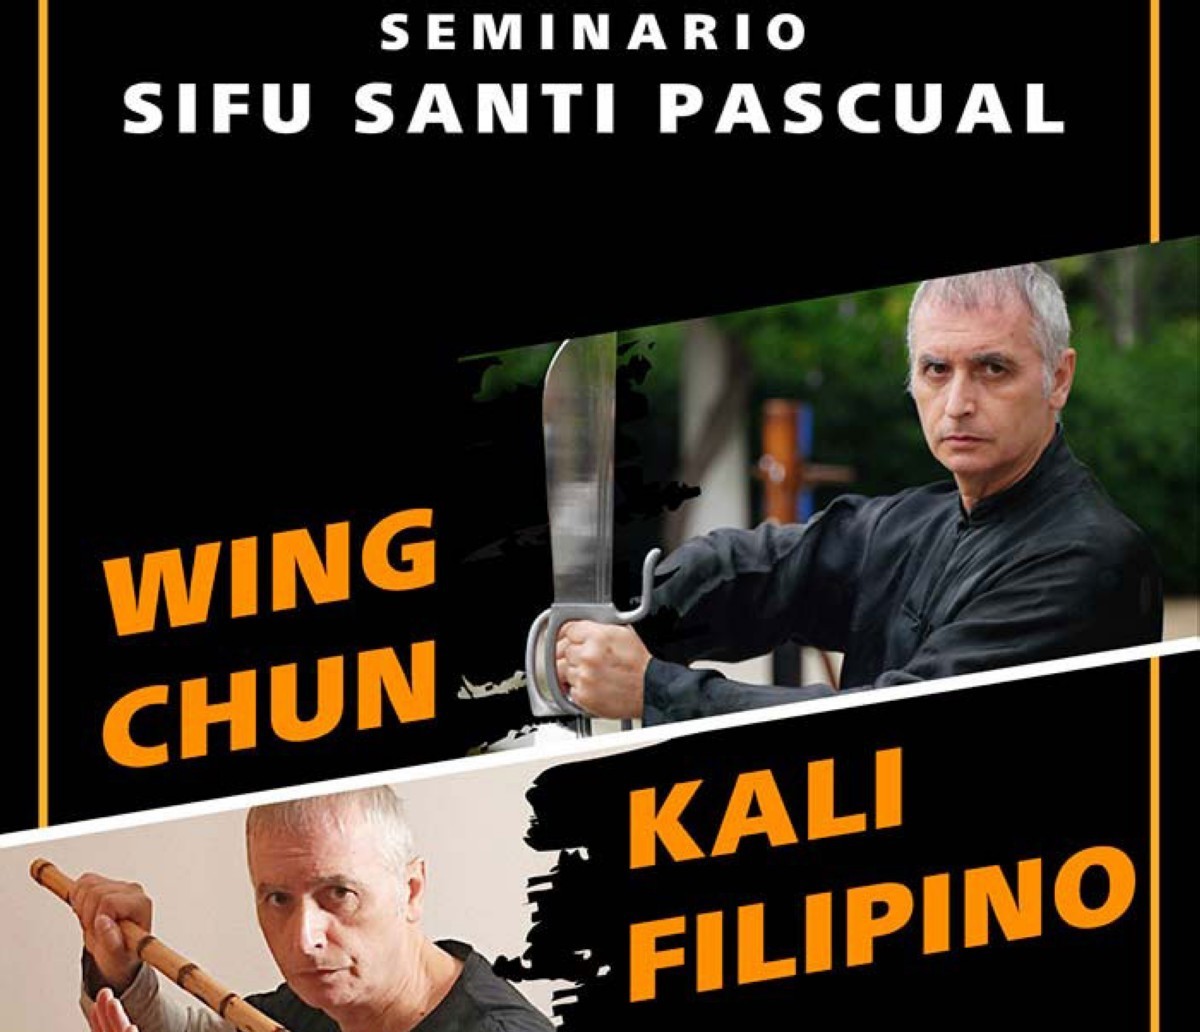 Seminario de Wing Chun y Kali Filipino en Almera